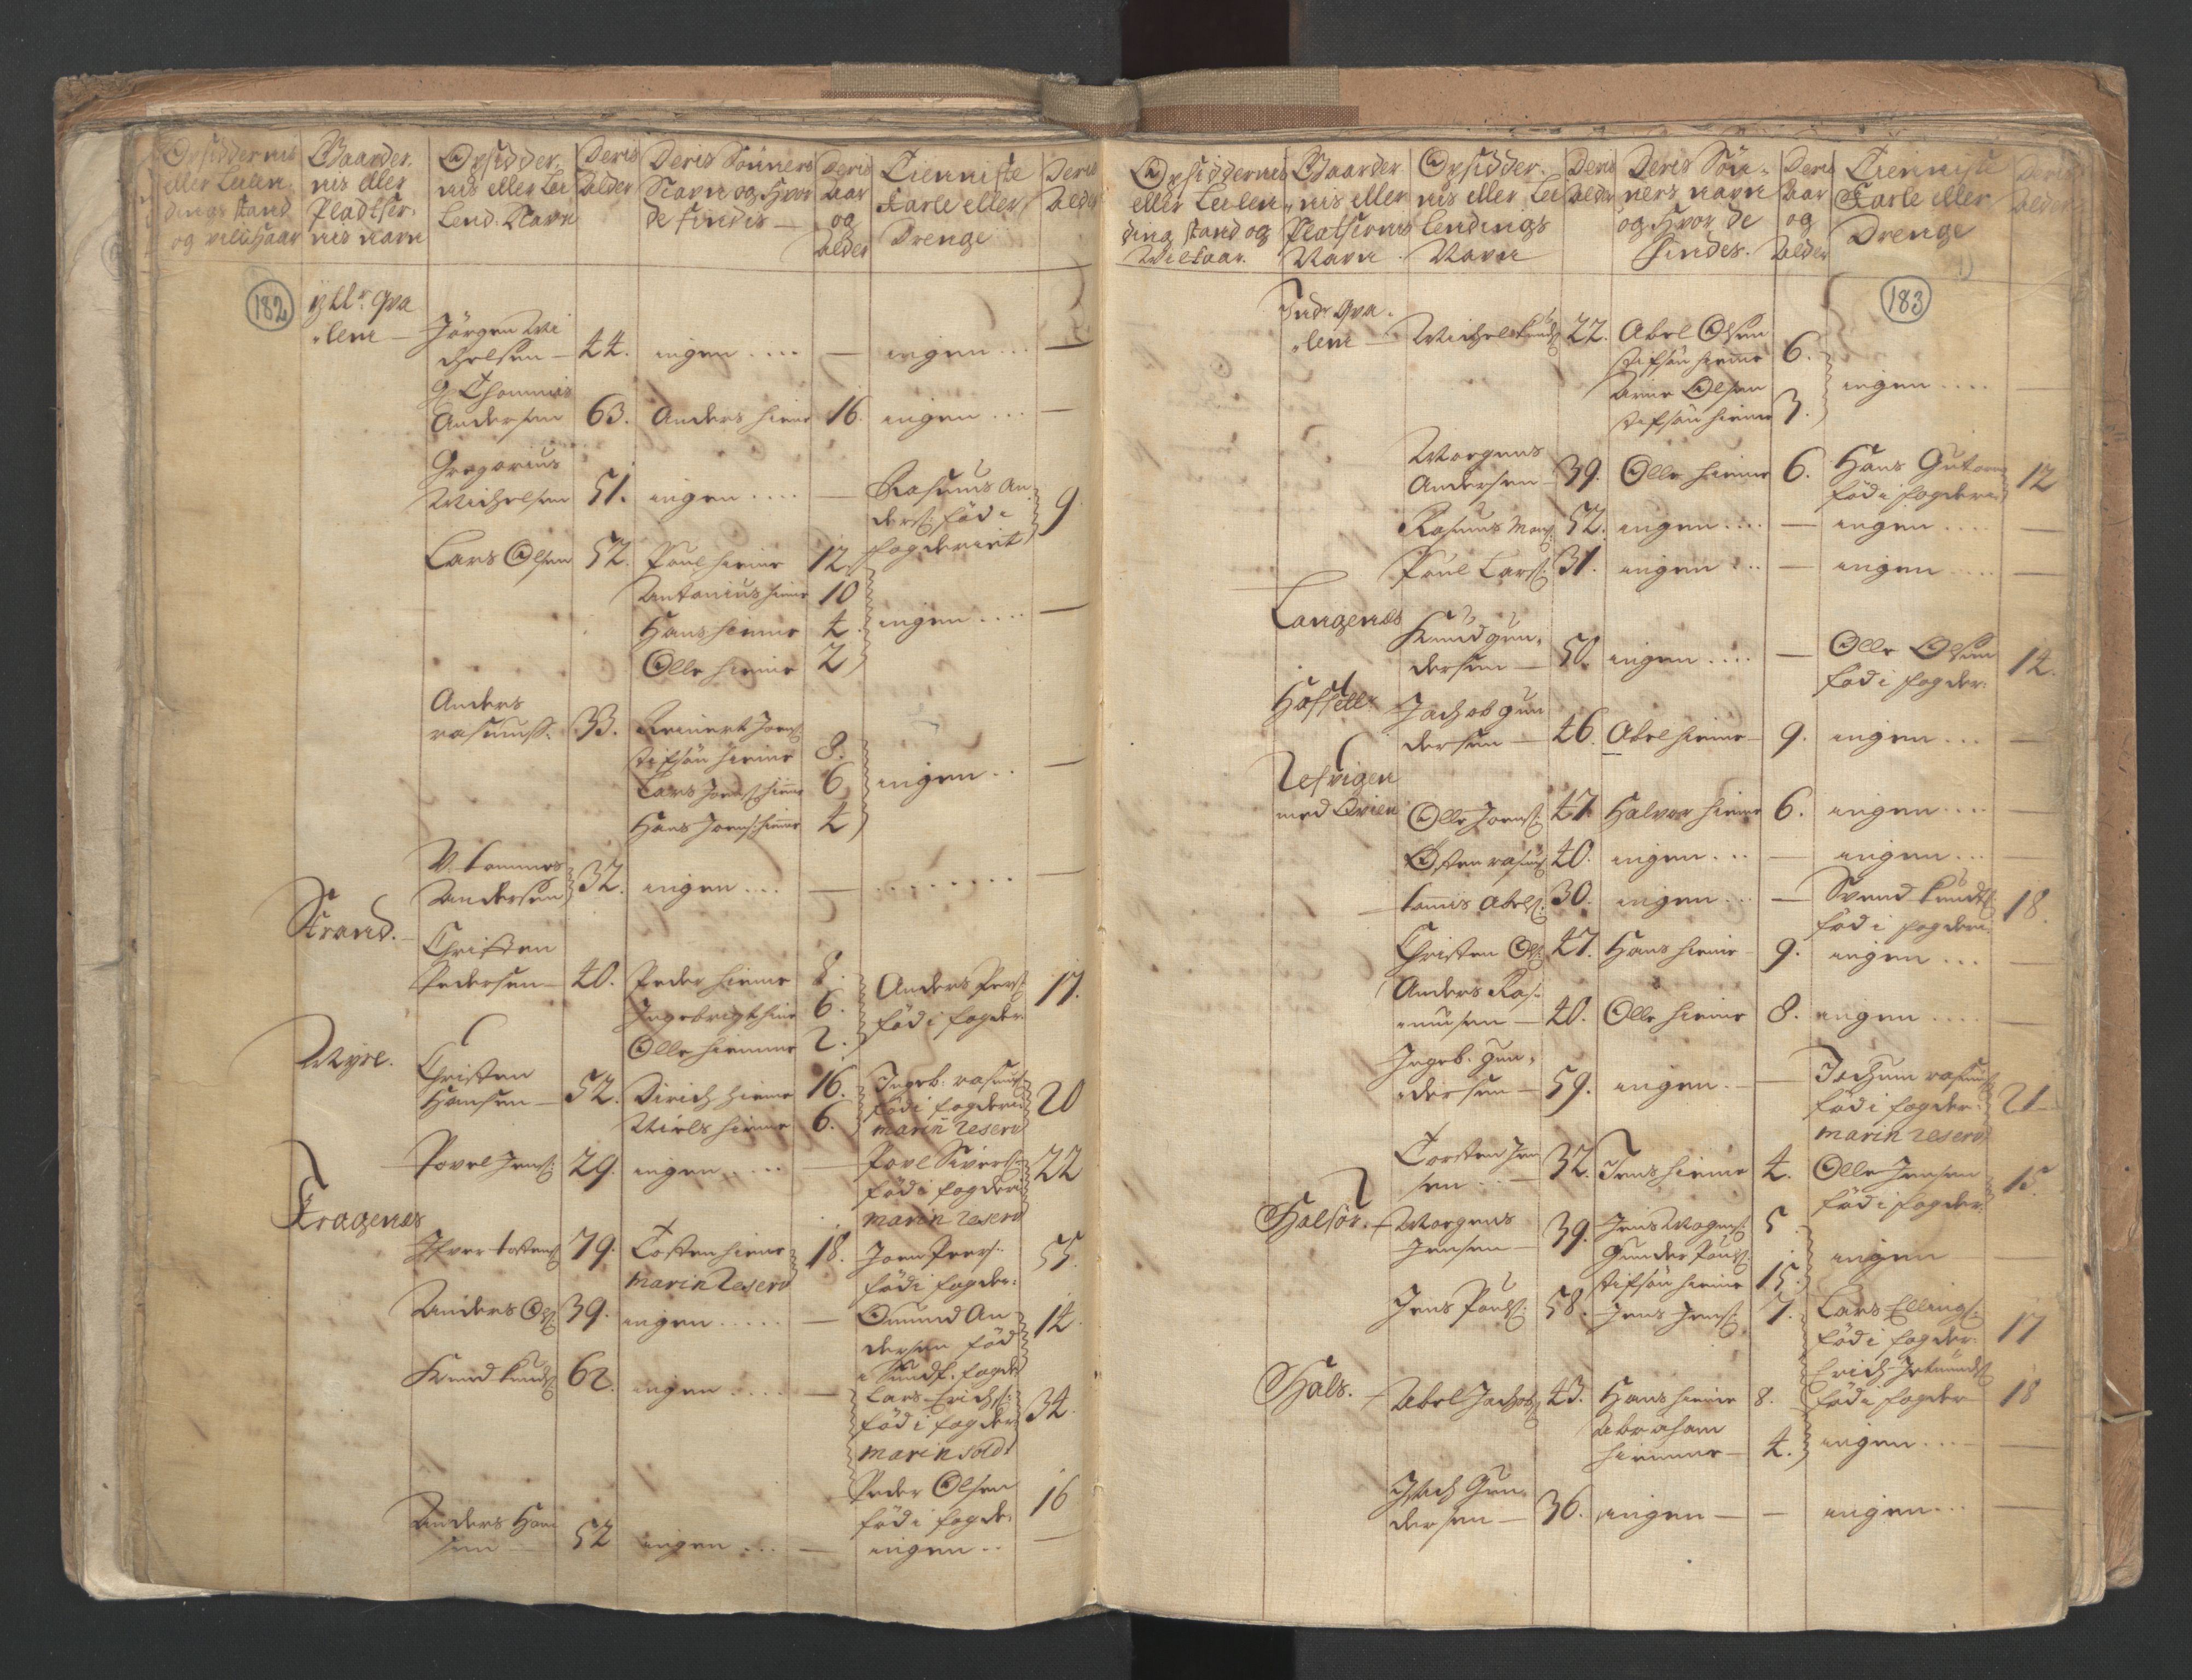 RA, Census (manntall) 1701, no. 9: Sunnfjord fogderi, Nordfjord fogderi and Svanø birk, 1701, p. 182-183